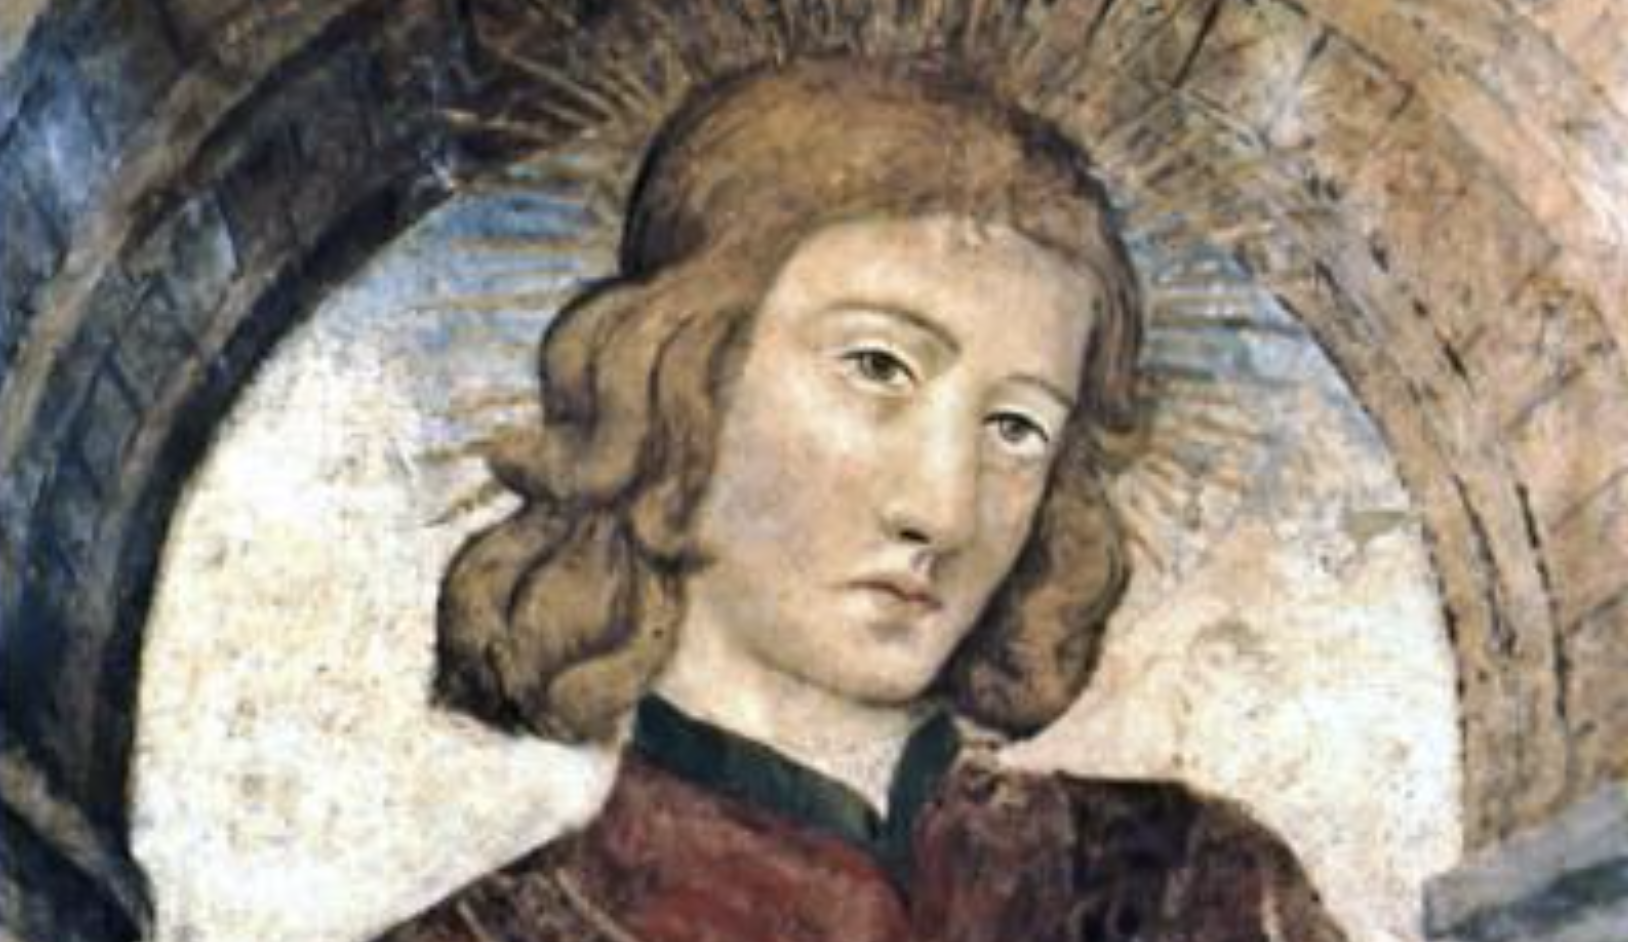 Beato Amedeo di Savoia prega per noi – 30 marzo